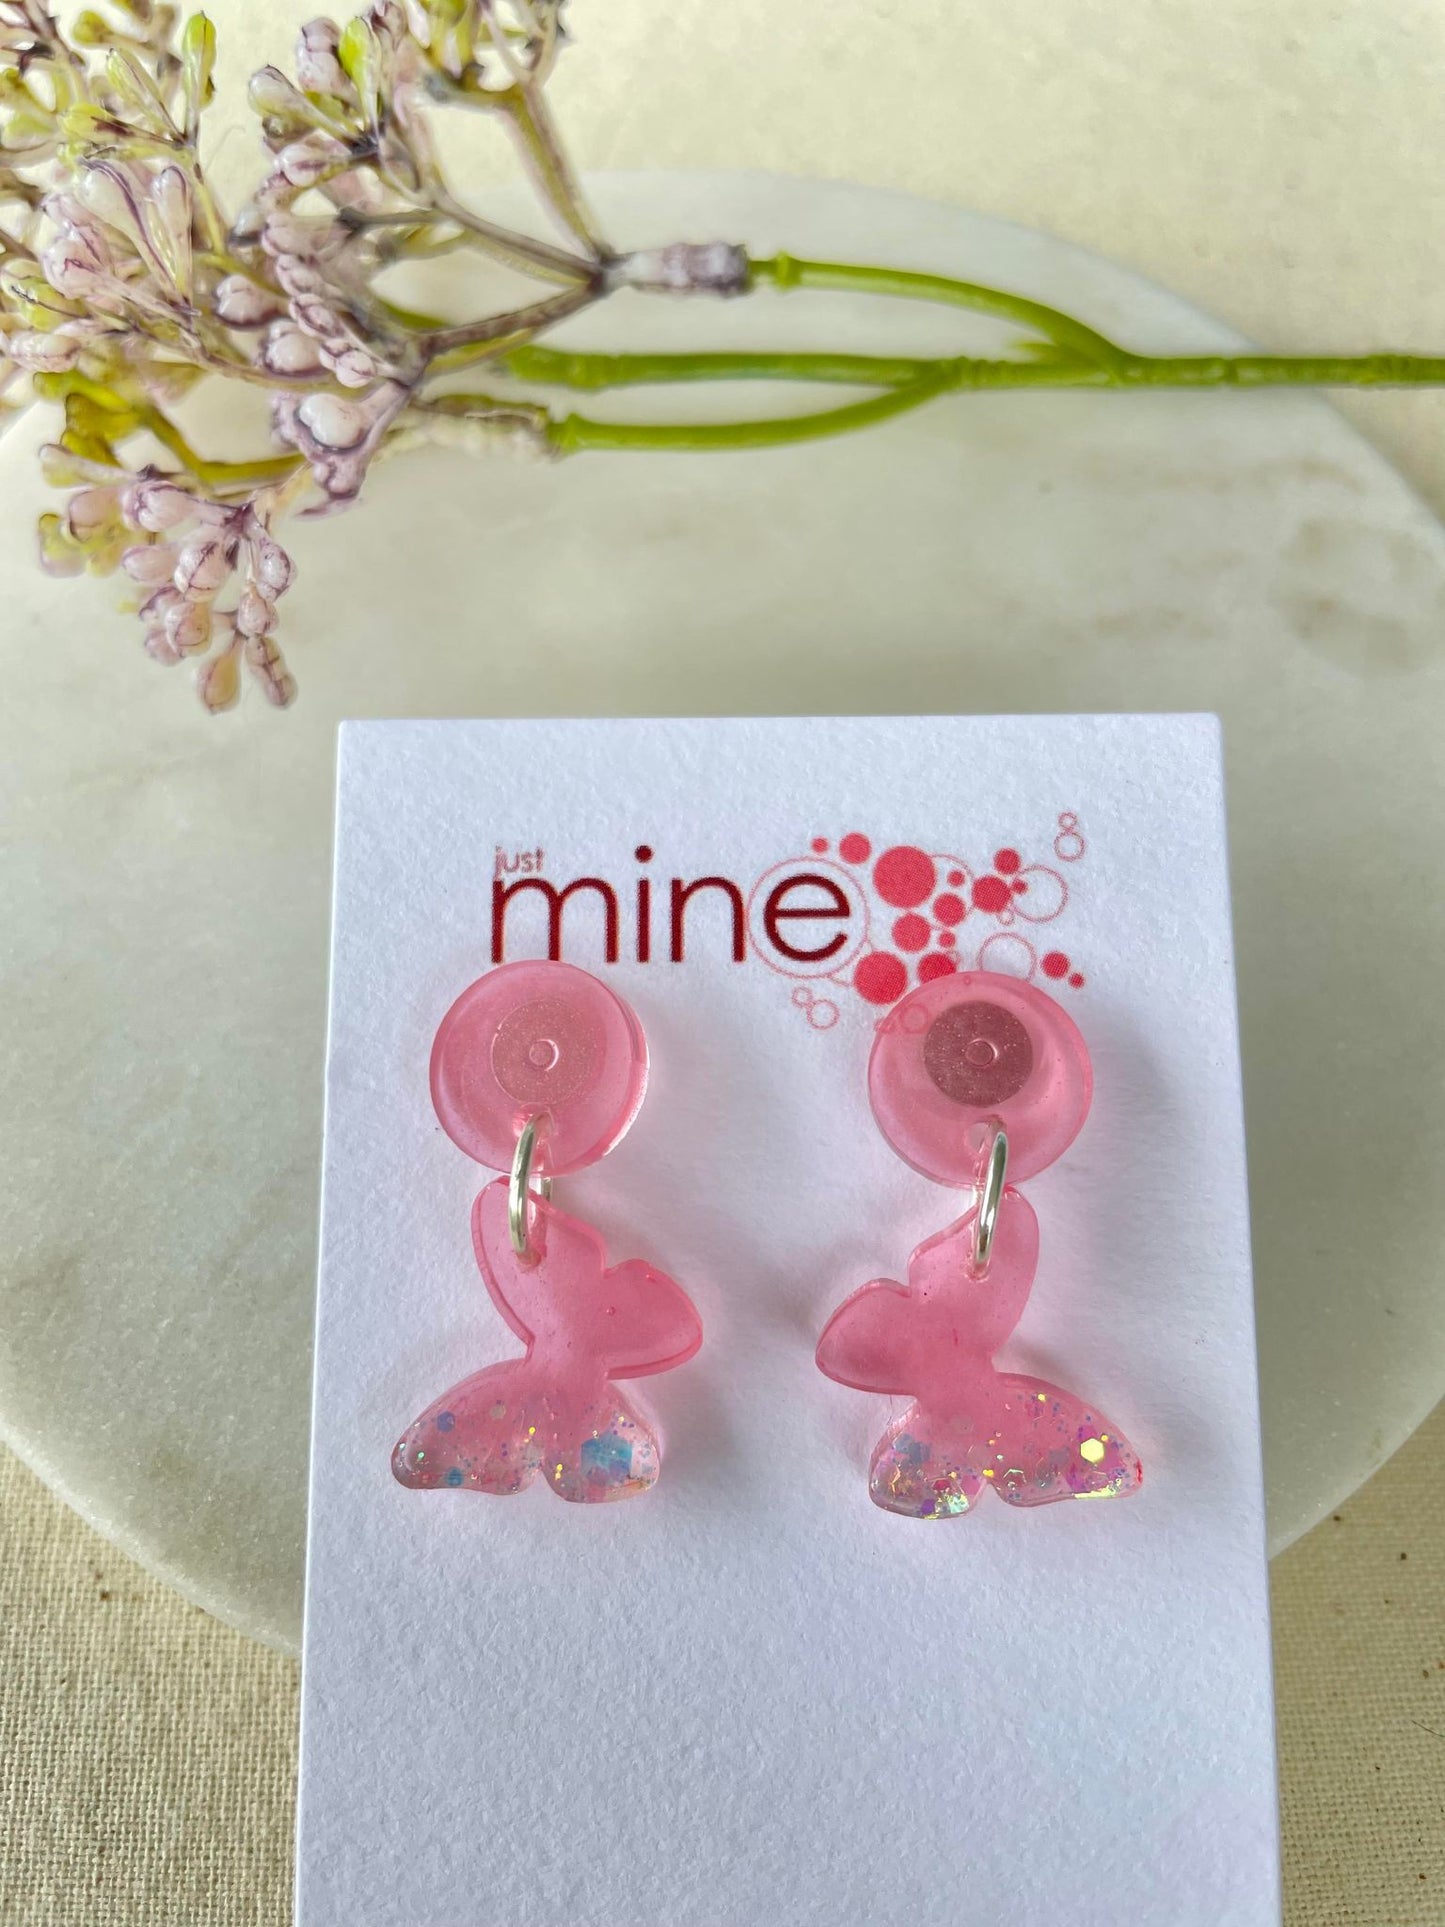 Perfect pink glitter butterfly earrings